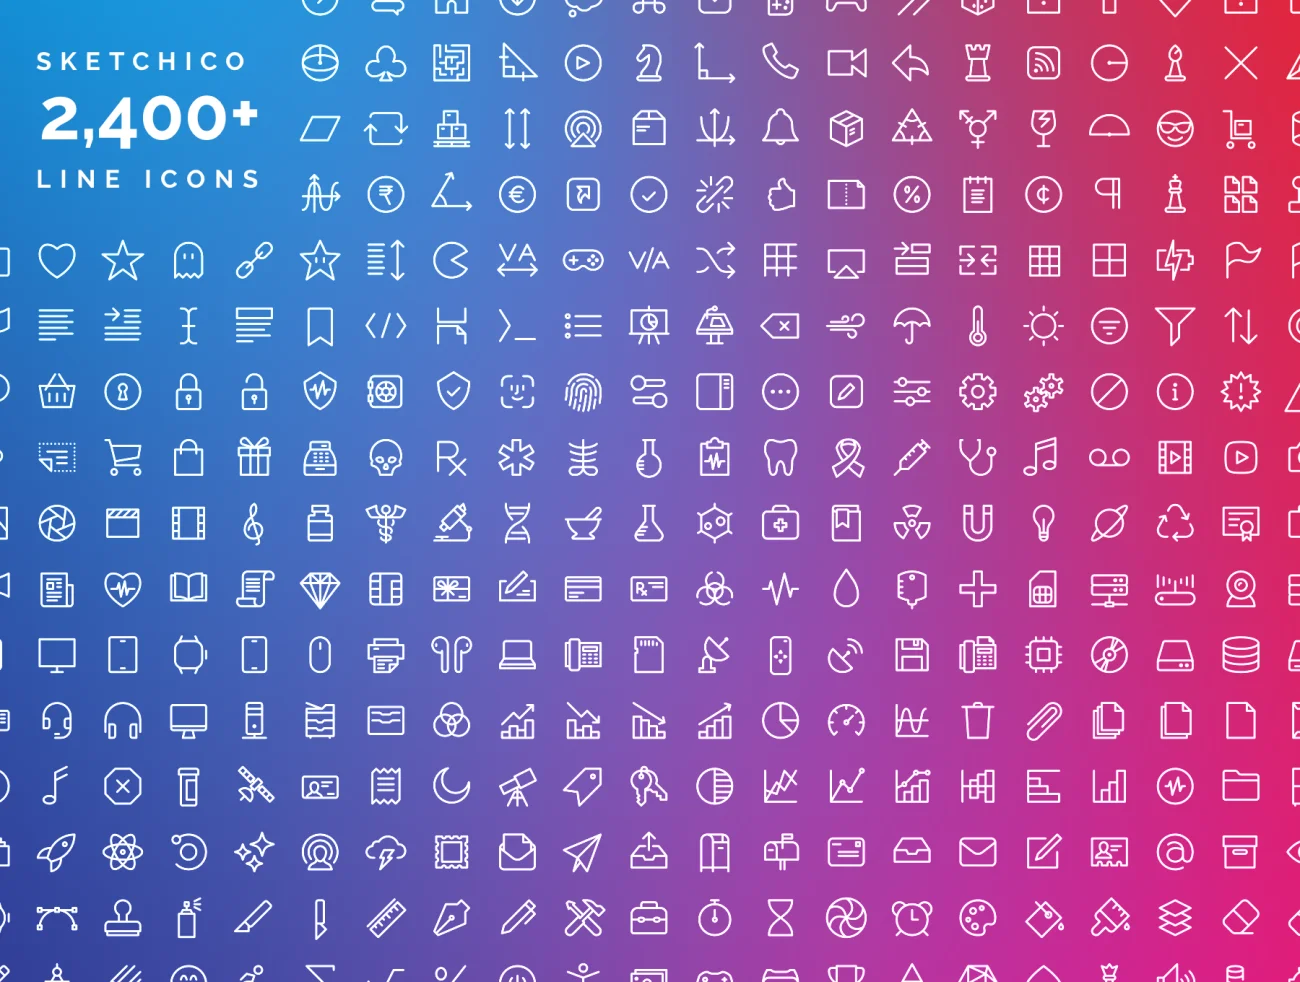 2,400个图标和图标字体 2,400+ Line Icons and Icon Font缩略图到位啦UI